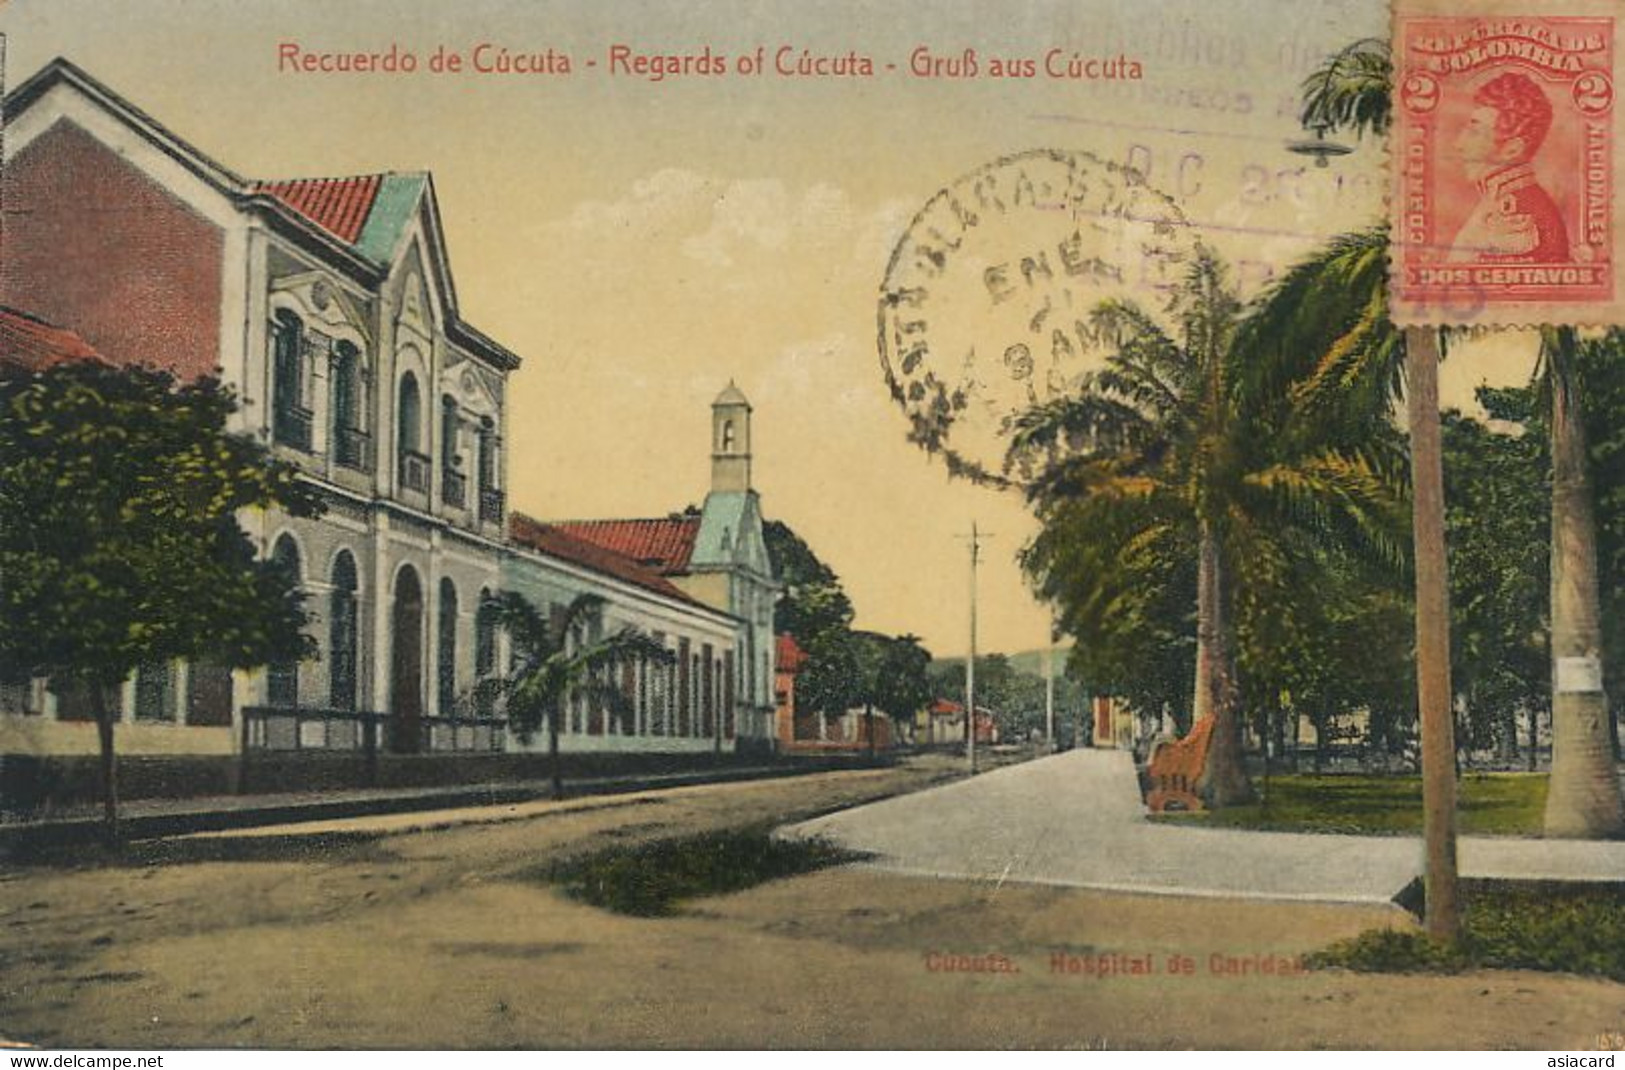 Recuerdo De Cucuta Gruss Aus Cucuta  Hospital De Caridad  Edicion Cogellos  Used 1922 To Santa Clara Cuba - Colombie